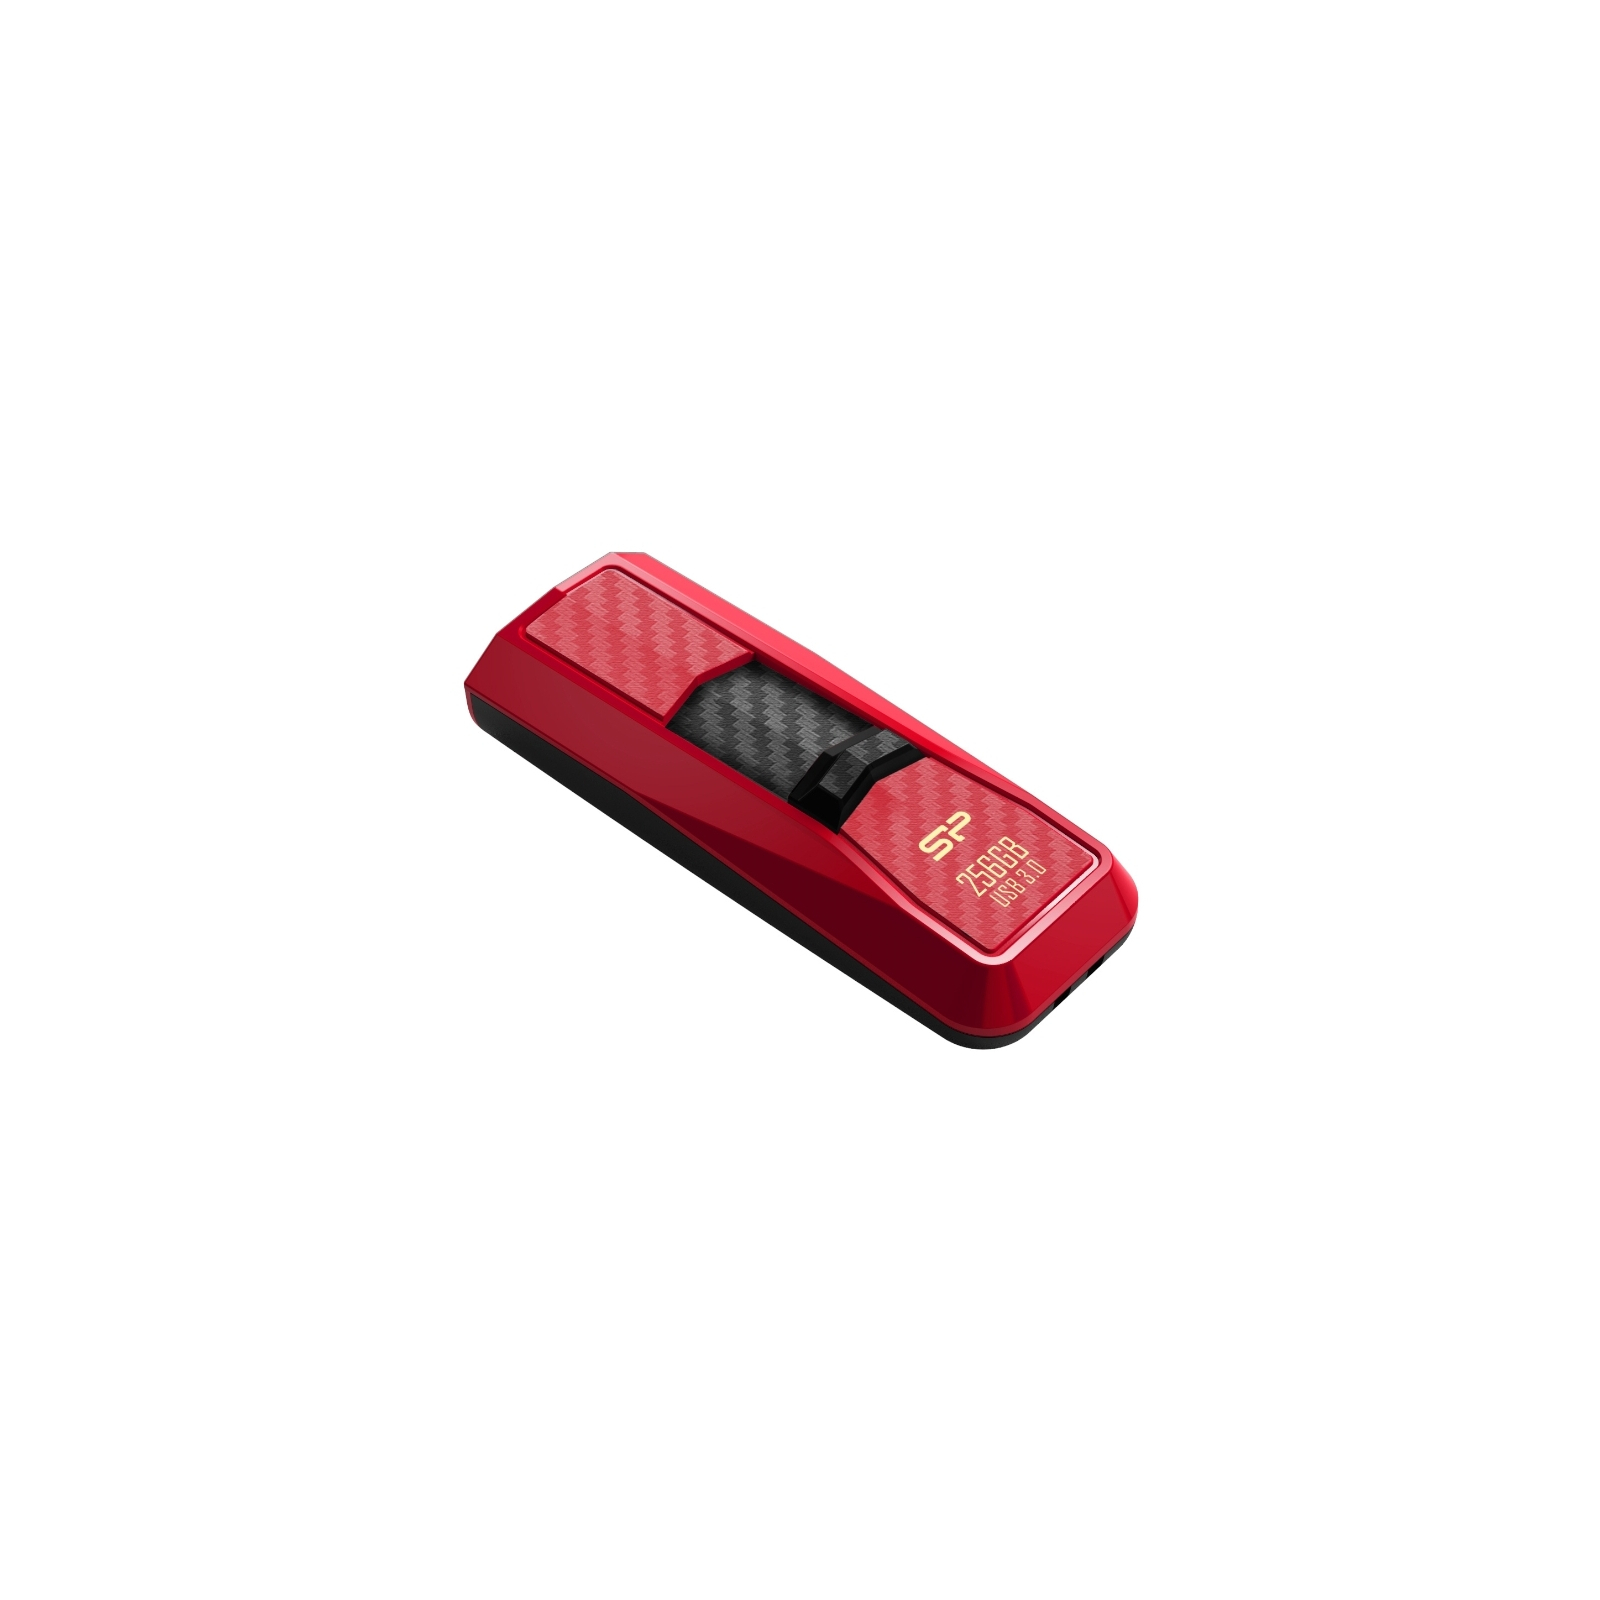 USB флеш накопитель Silicon Power 128Gb Blaze B50 Red USB 3.0 (SP128GBUF3B50V1R) изображение 2